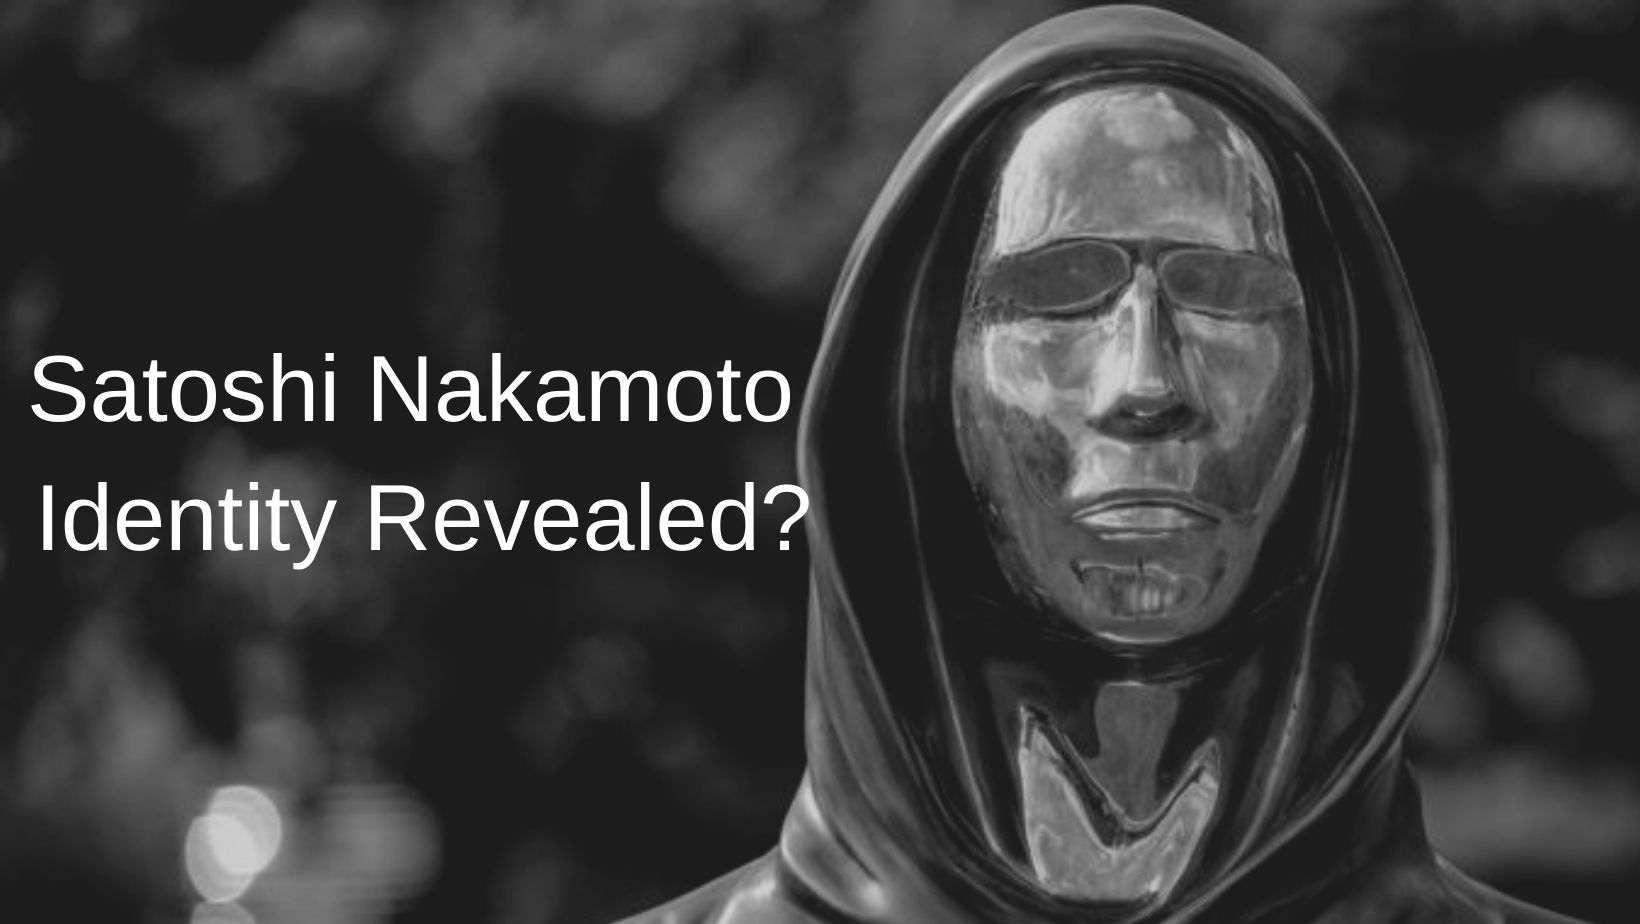 Satoshi Nakamoto Identity Revealed... Maybe